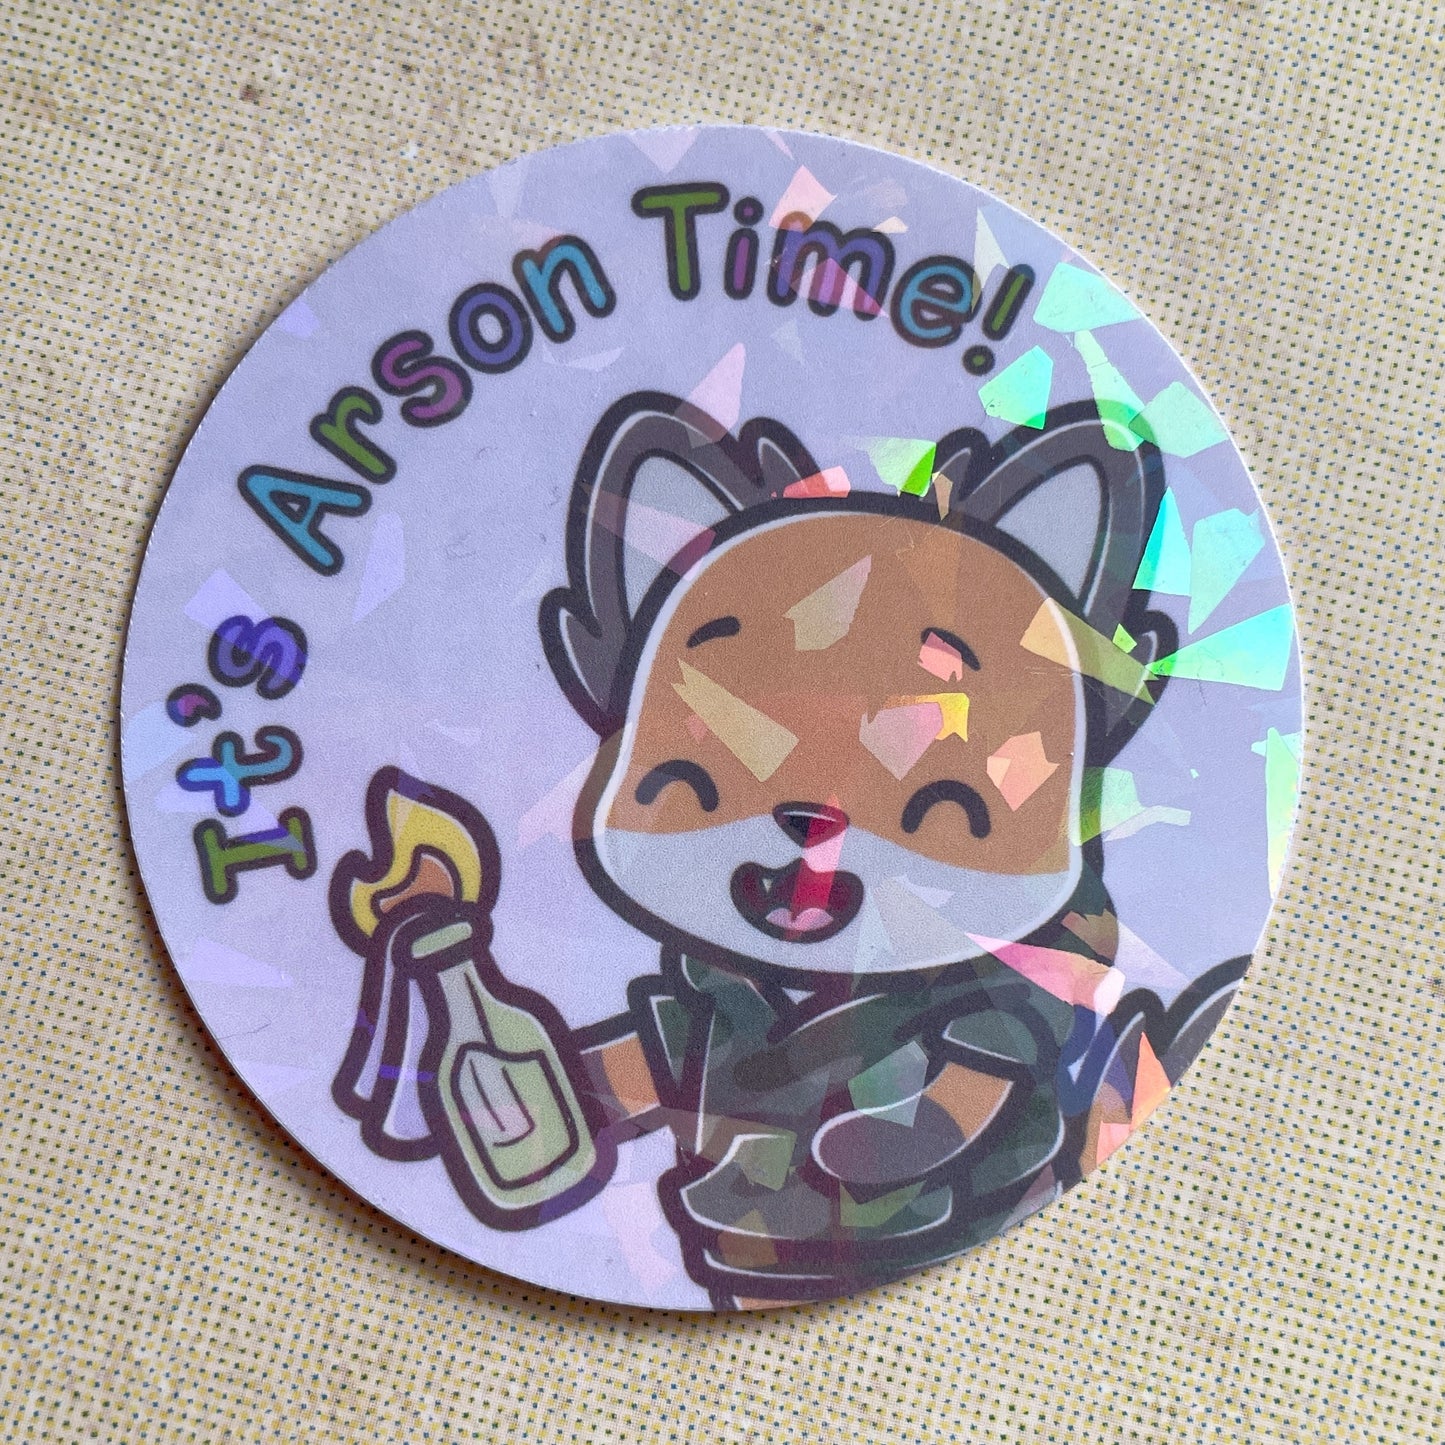 It's Arson Time! sticker